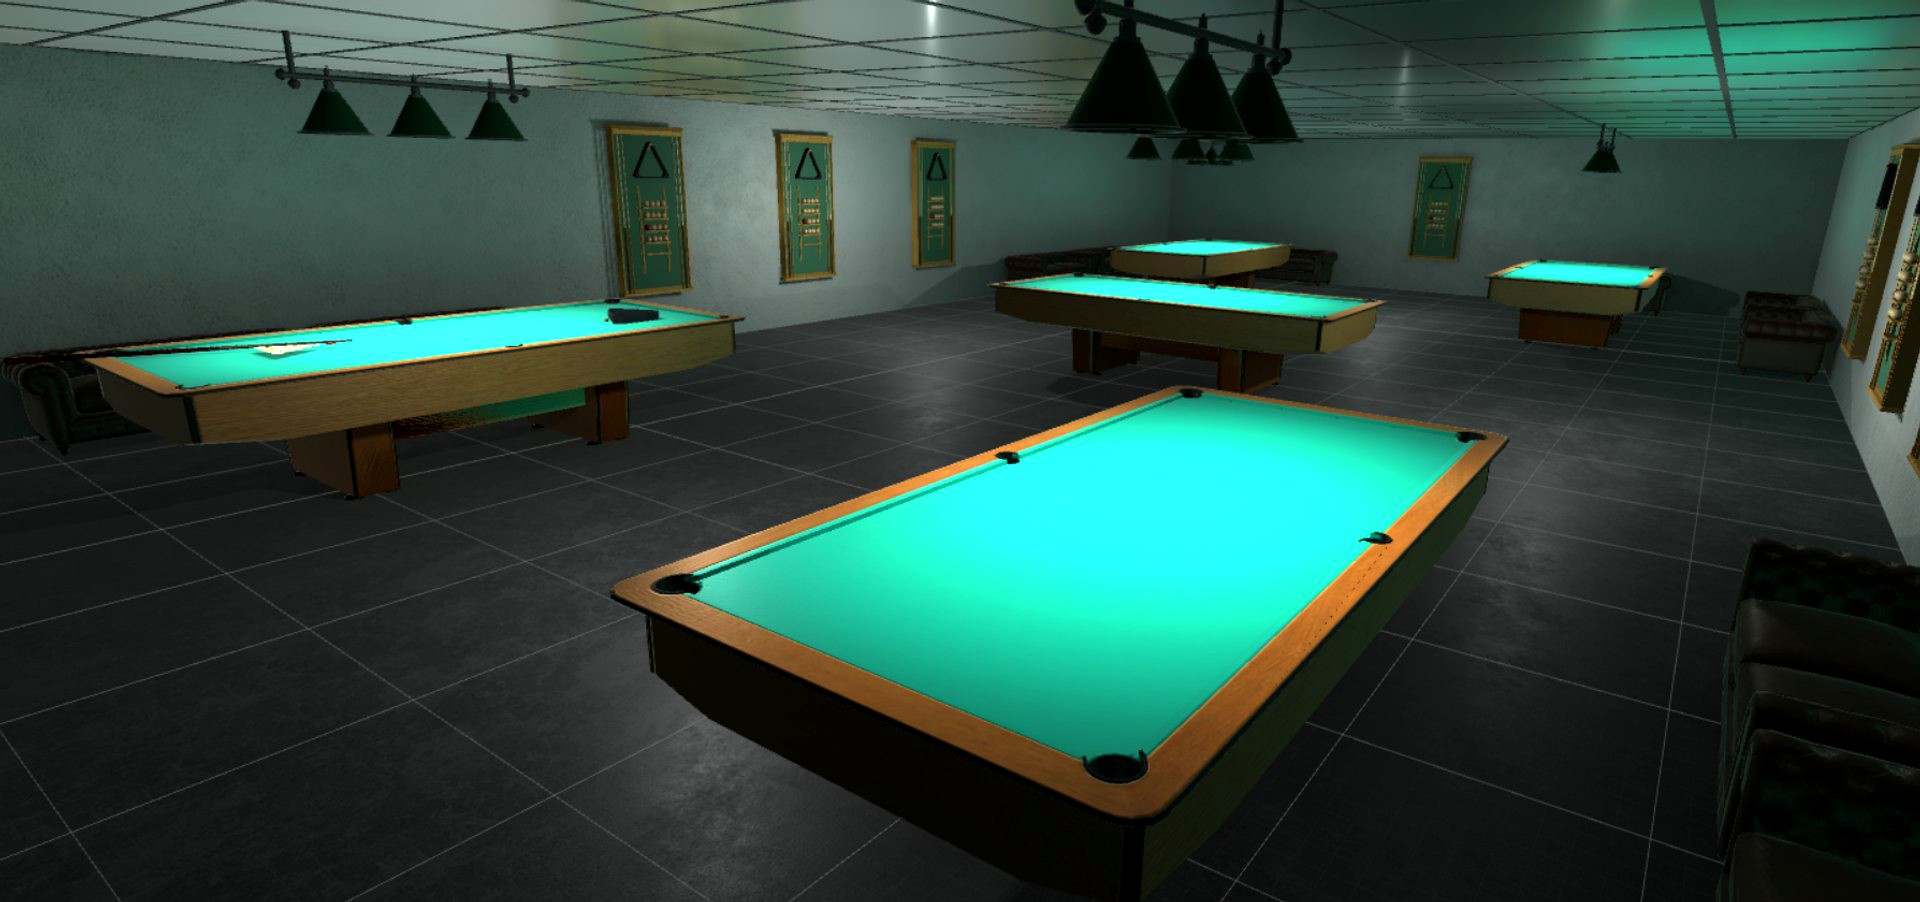 Billiards - interior and props